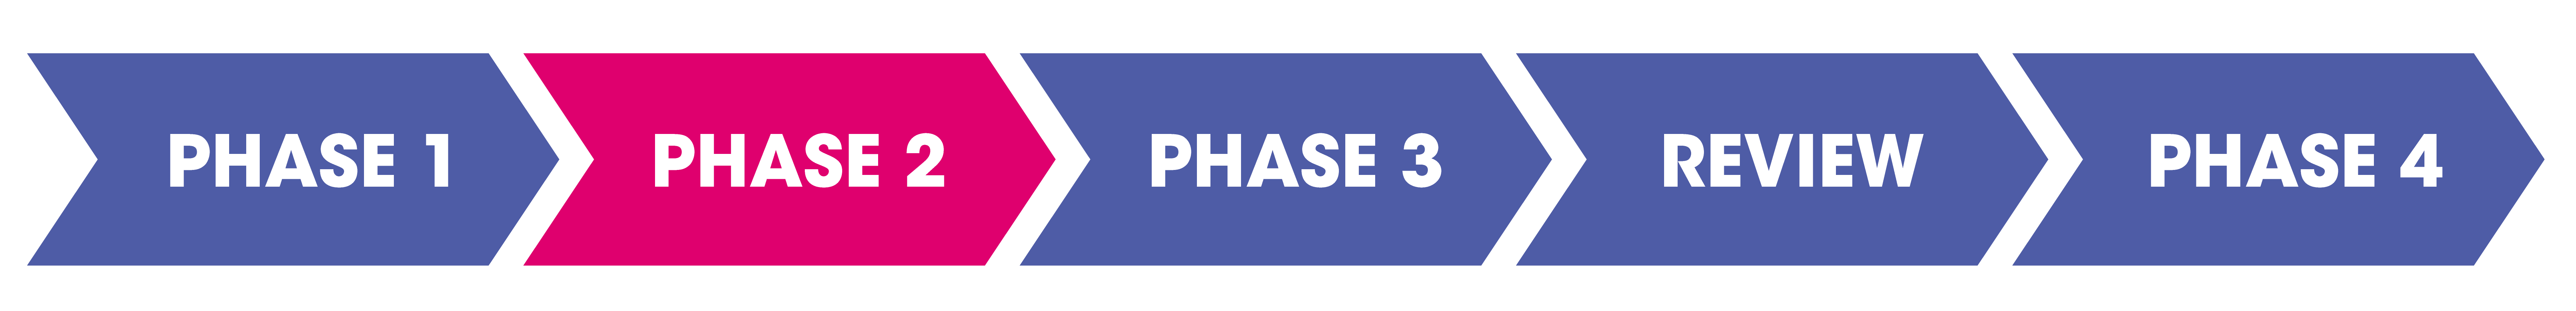 Phase 2